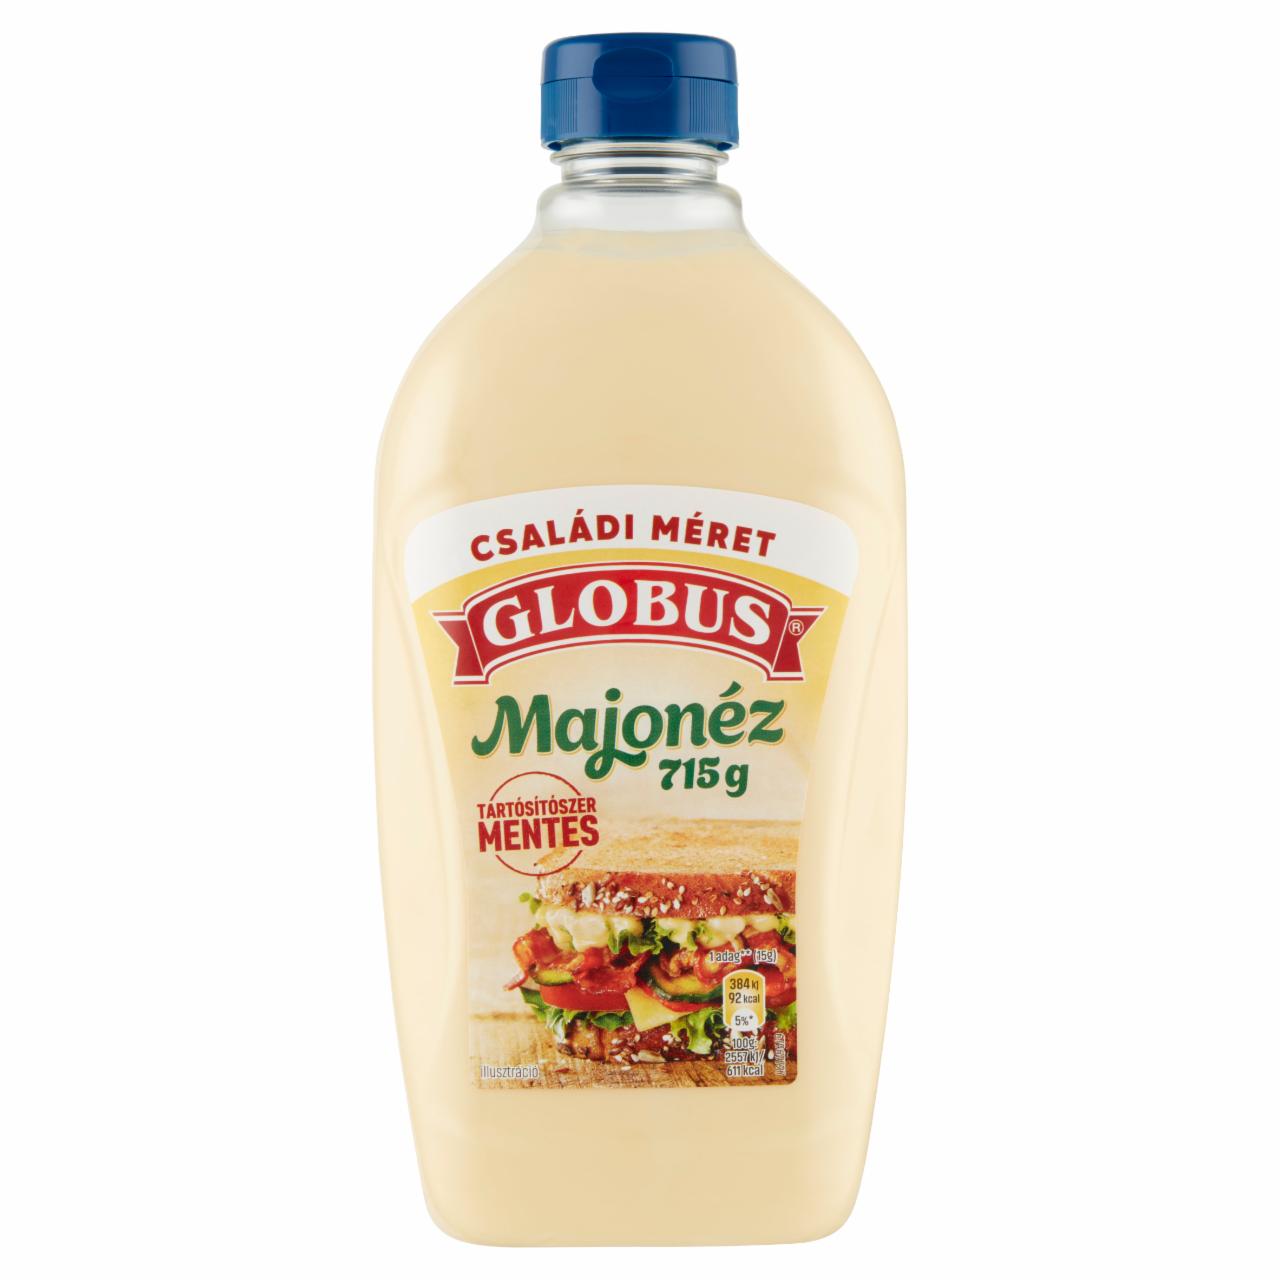 Képek - Globus majonéz 415 g